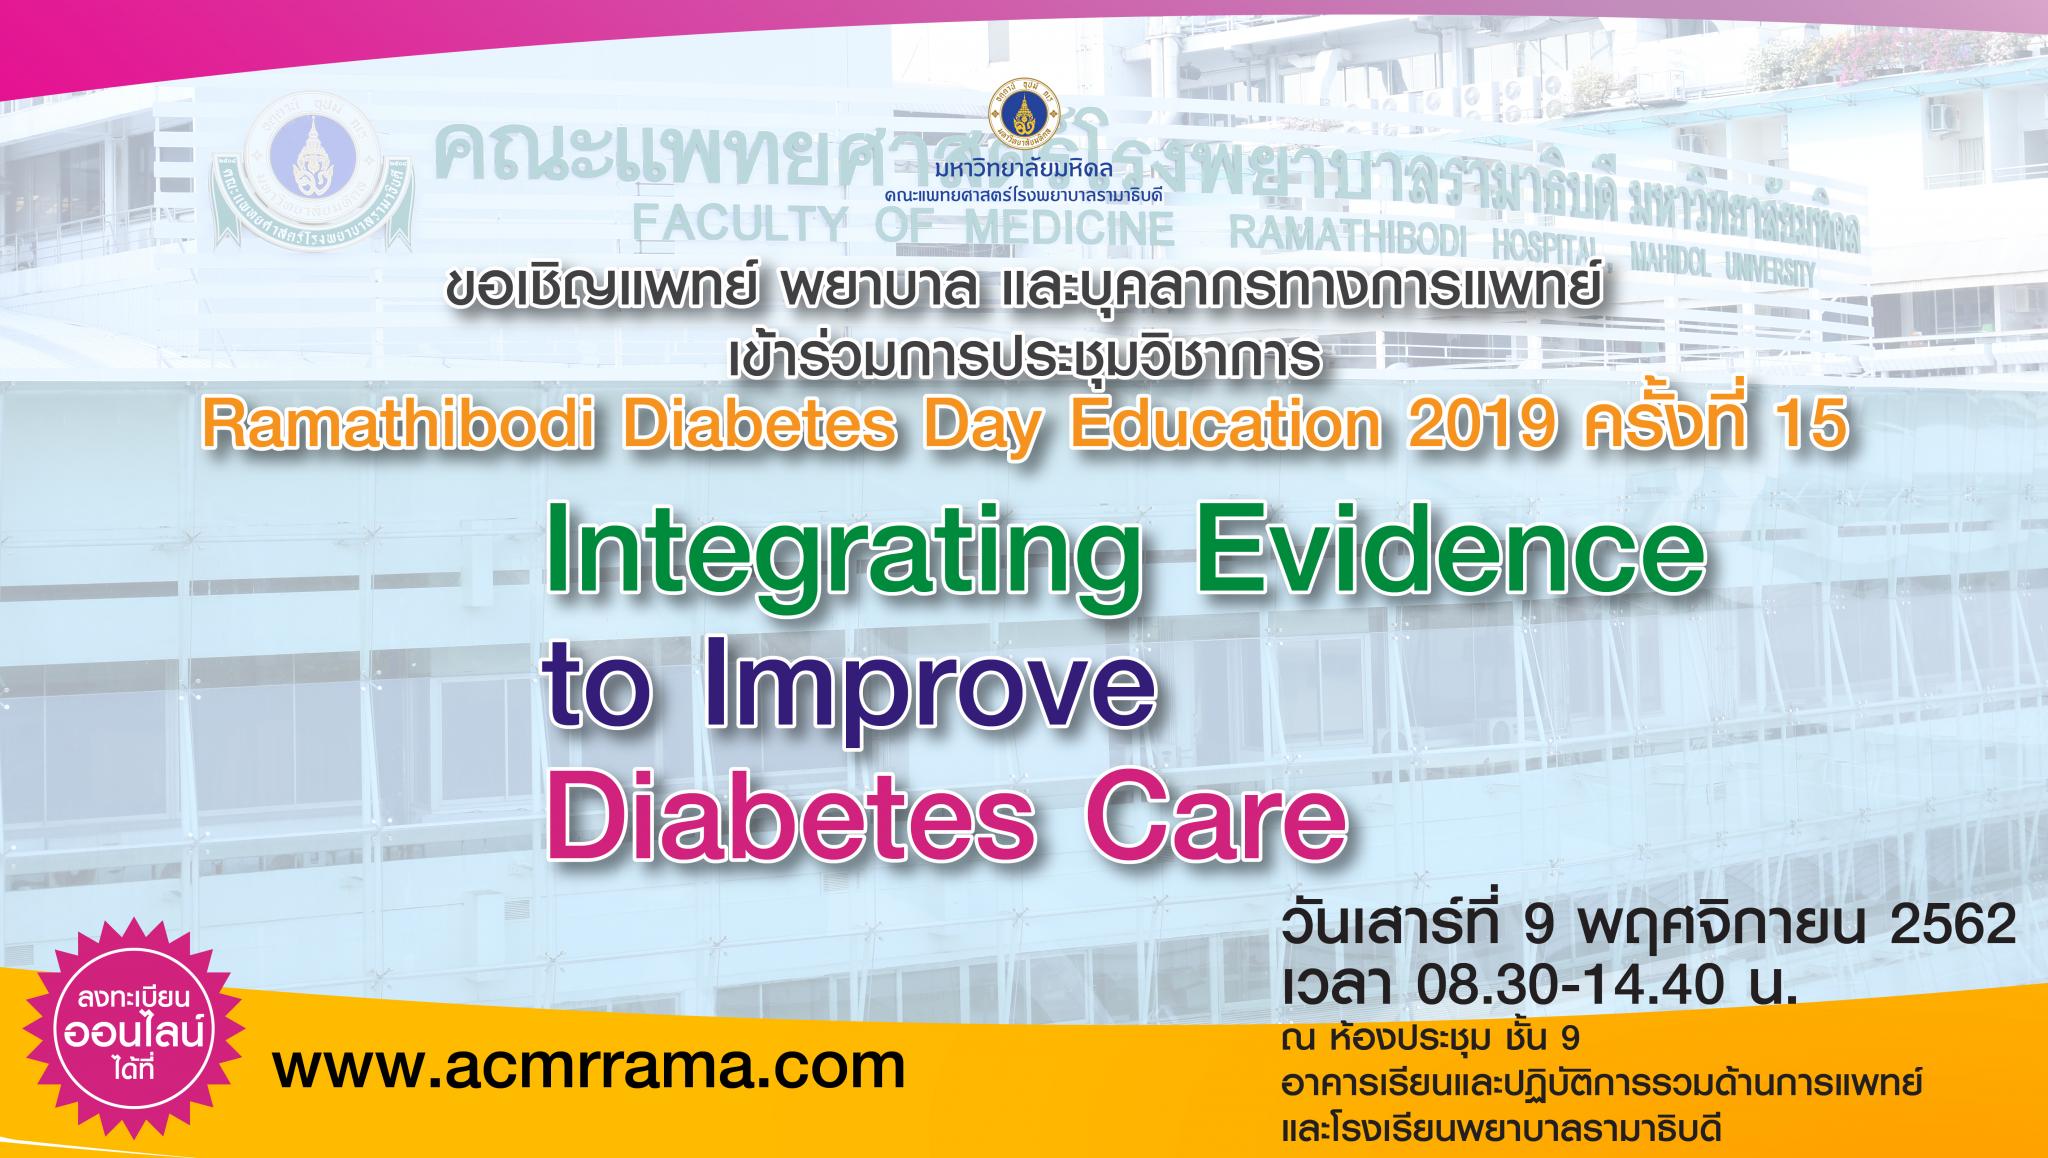 ขอเชิญเข้าร่วมประชุมวิชาการ Ramathibodi Diabetes Day Education 2019 ครั้งที่ 15